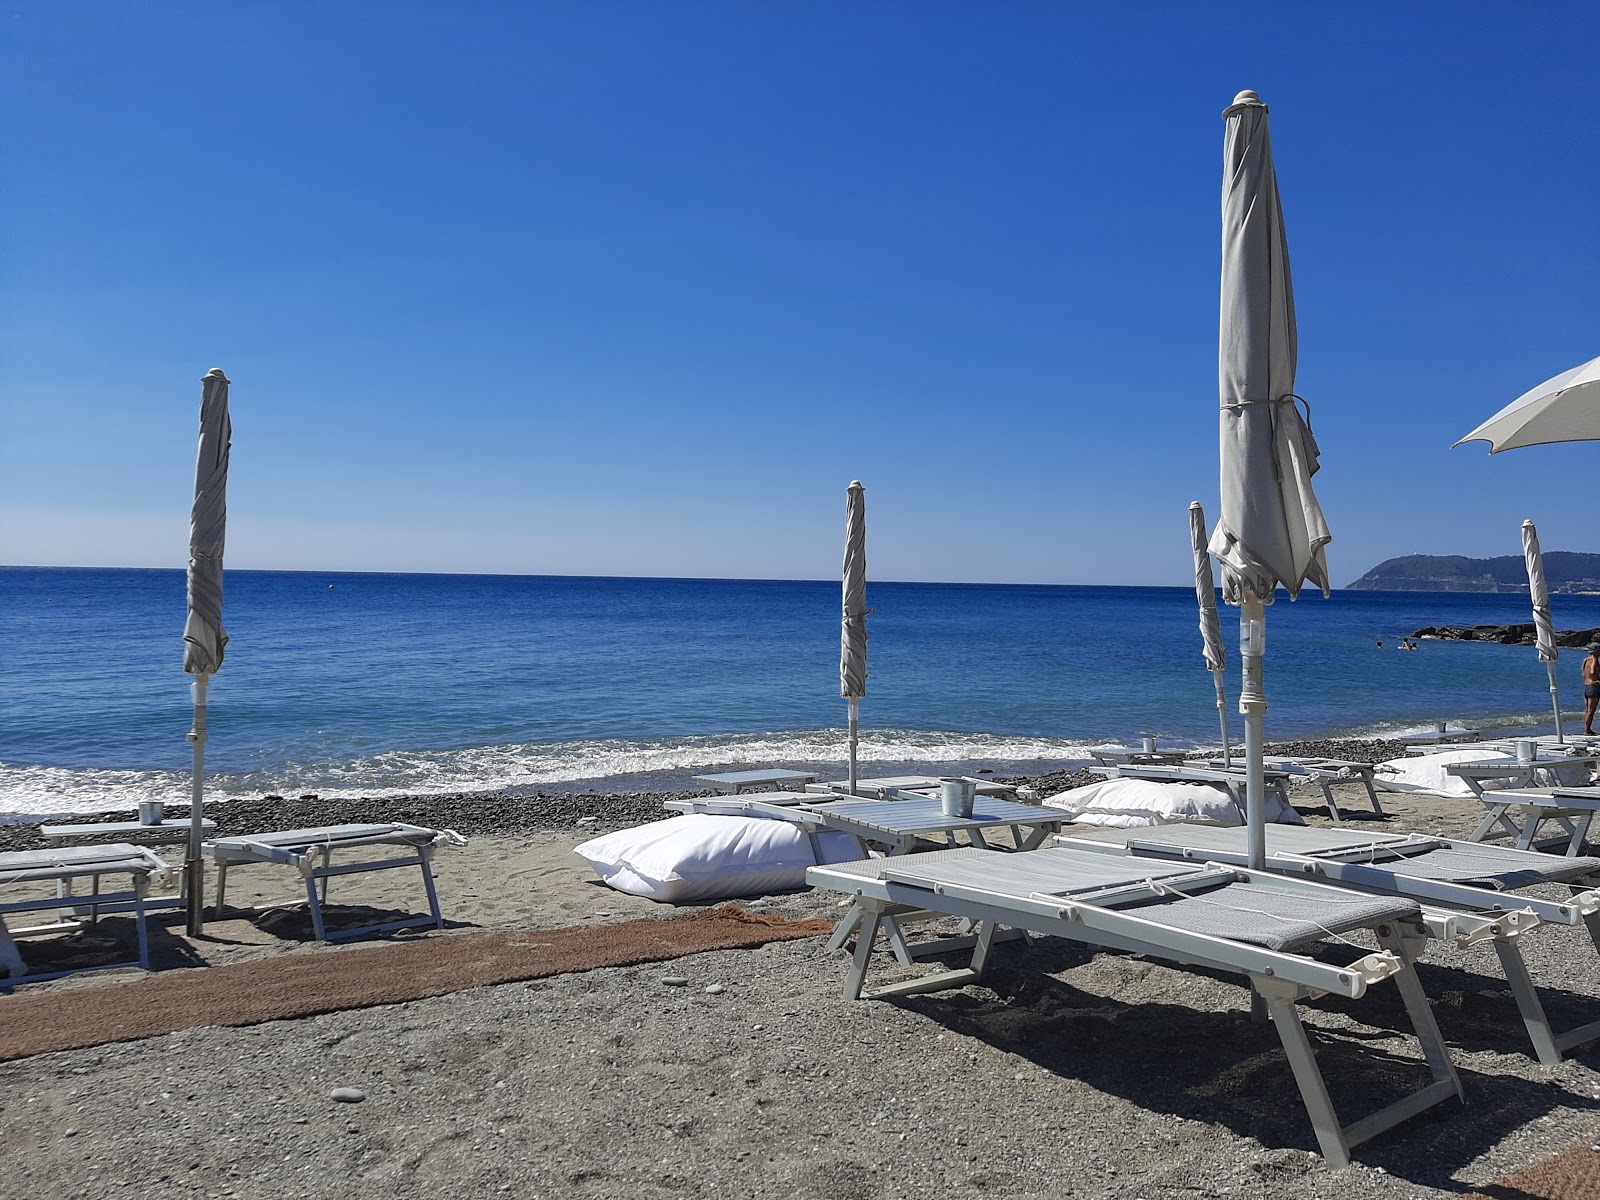 Foto von Spiaggia libera Alassio - beliebter Ort unter Entspannungskennern